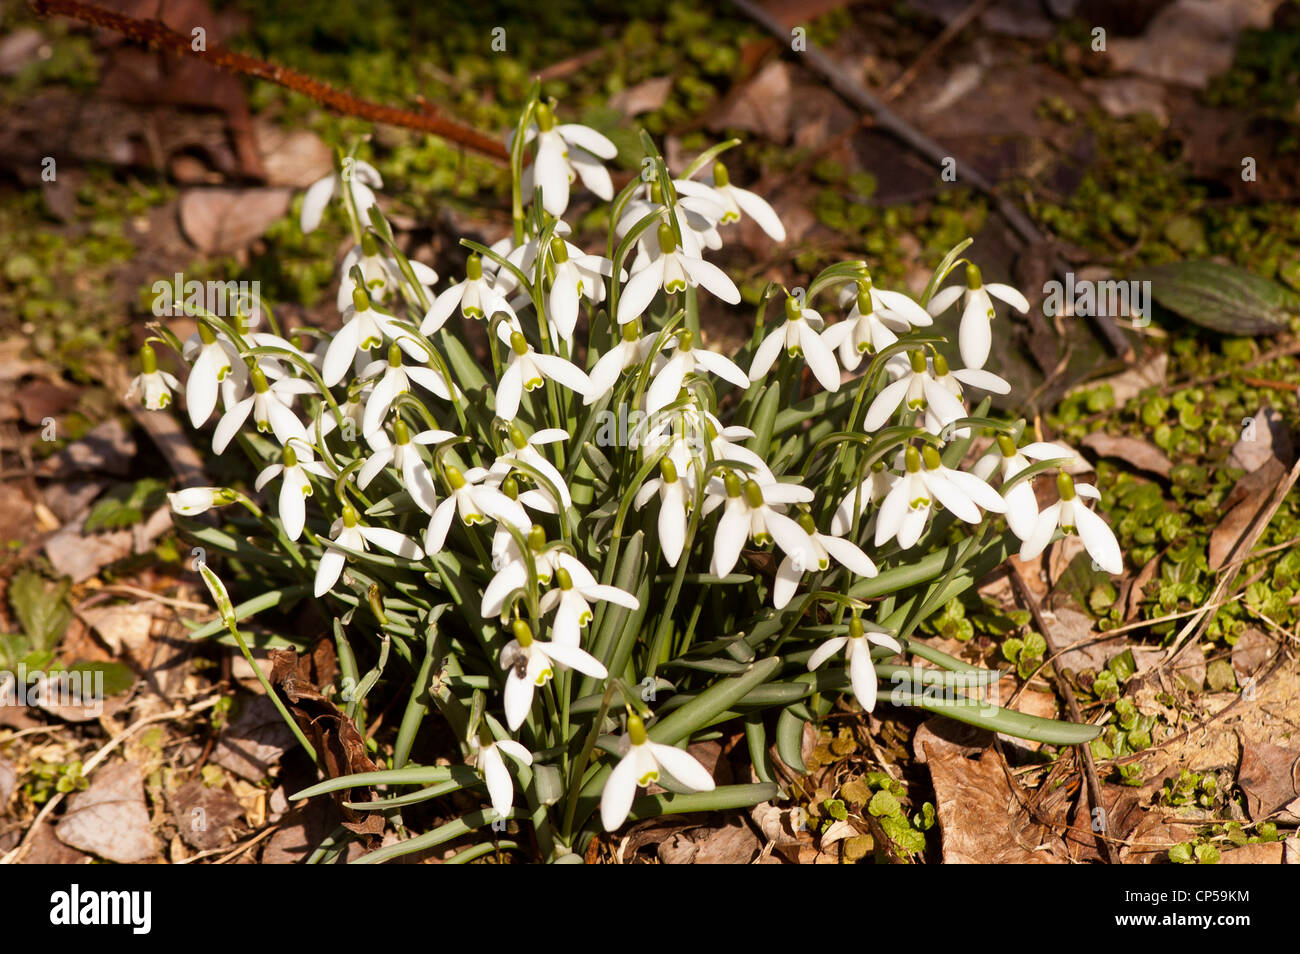 Grupo de campanilla de las nieves común, Galanthus nivalis creciente sobre el césped en la primavera temprana Foto de stock